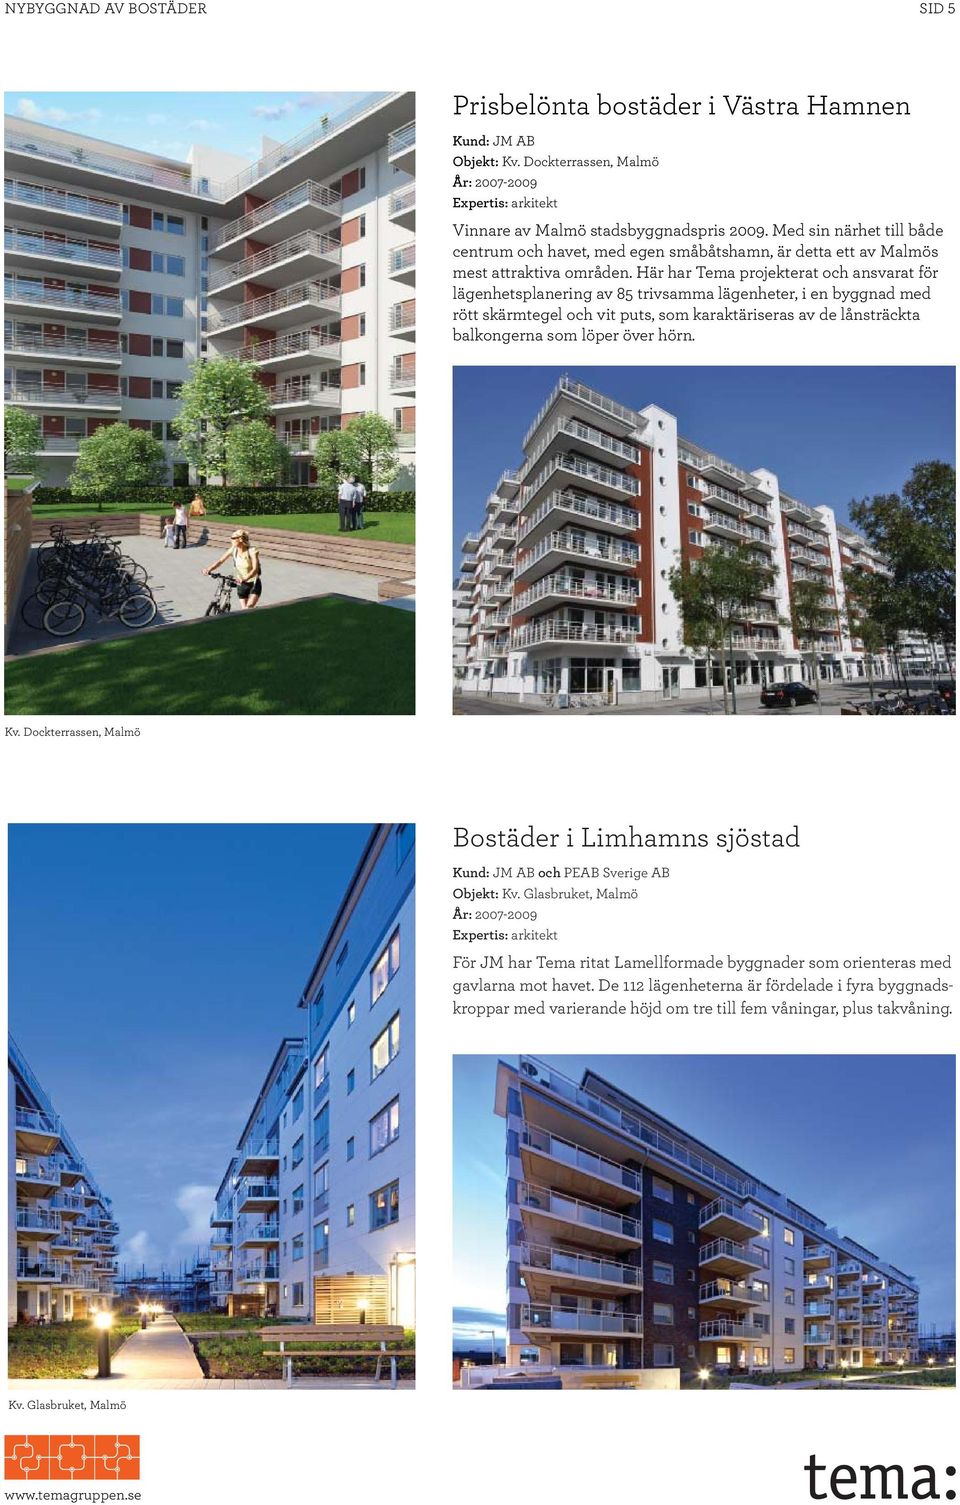 Här har Tema projekterat och ansvarat för lägenhetsplanering av 85 trivsamma lägenheter, i en byggnad med rött skärmtegel och vit puts, som karaktäriseras av de lånsträckta balkongerna som löper över